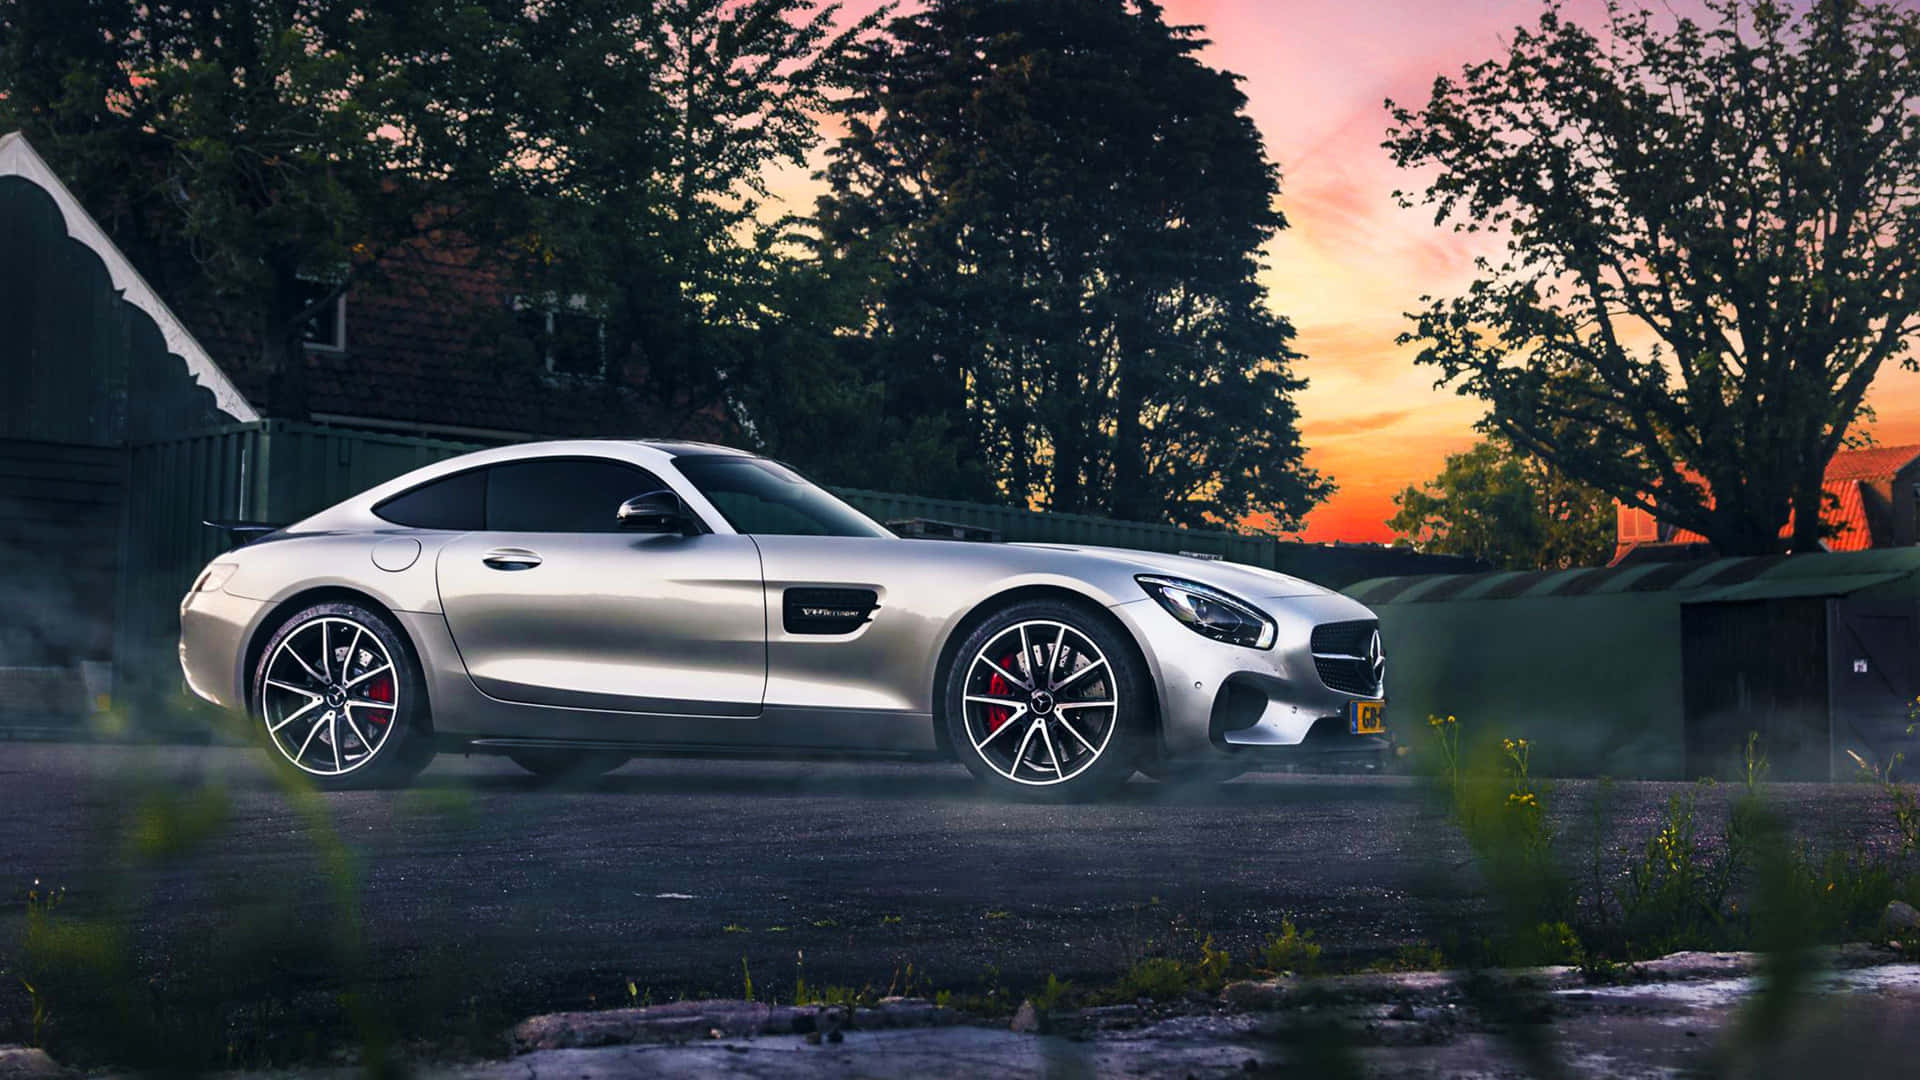 En kraftfuld blanding af præstation, luksus og stil: Mercedes AMG GT. Wallpaper